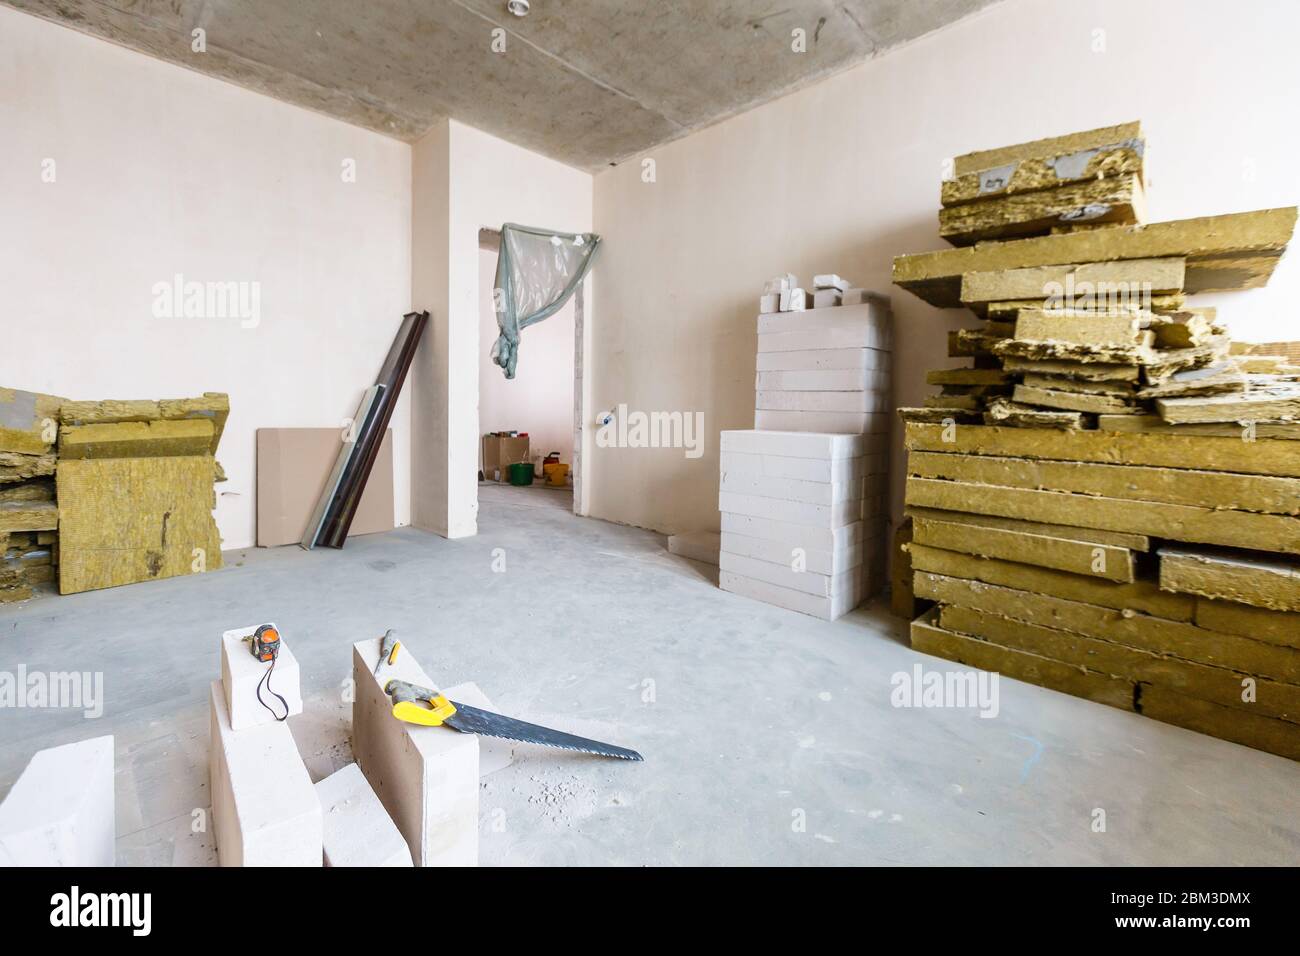 Material für Reparaturen in einer Wohnung ist im Bau, Umbau, Umbau und Renovierung. Wände aus Gipskartonplatten oder Trockenbau. Stockfoto